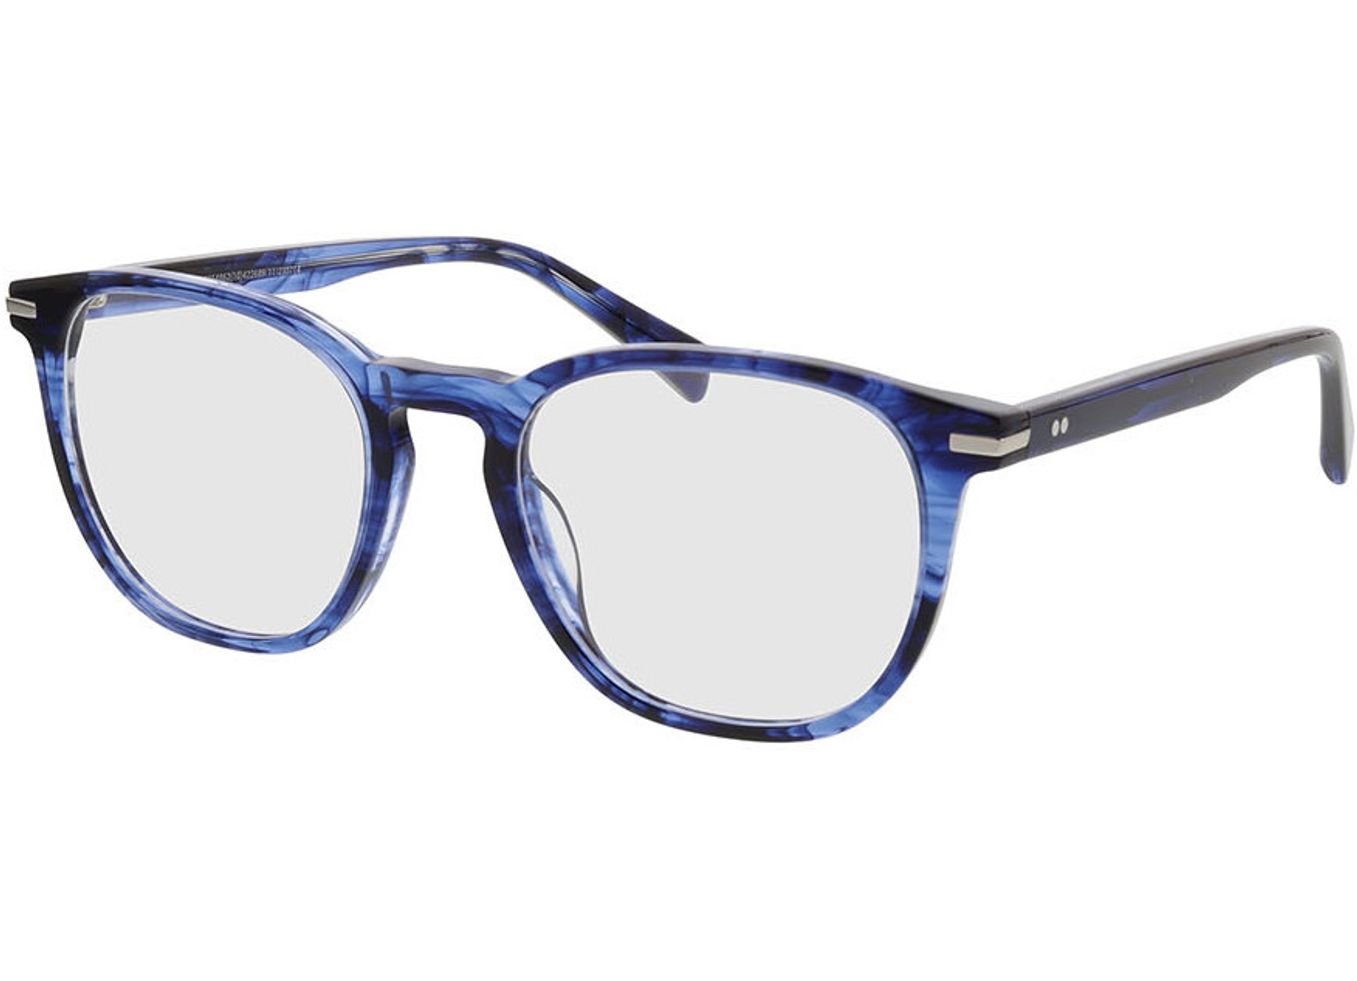 Preston - blau-meliert Brillengestell inkl. Gläser, Vollrand, Eckig von Brille24 Collection